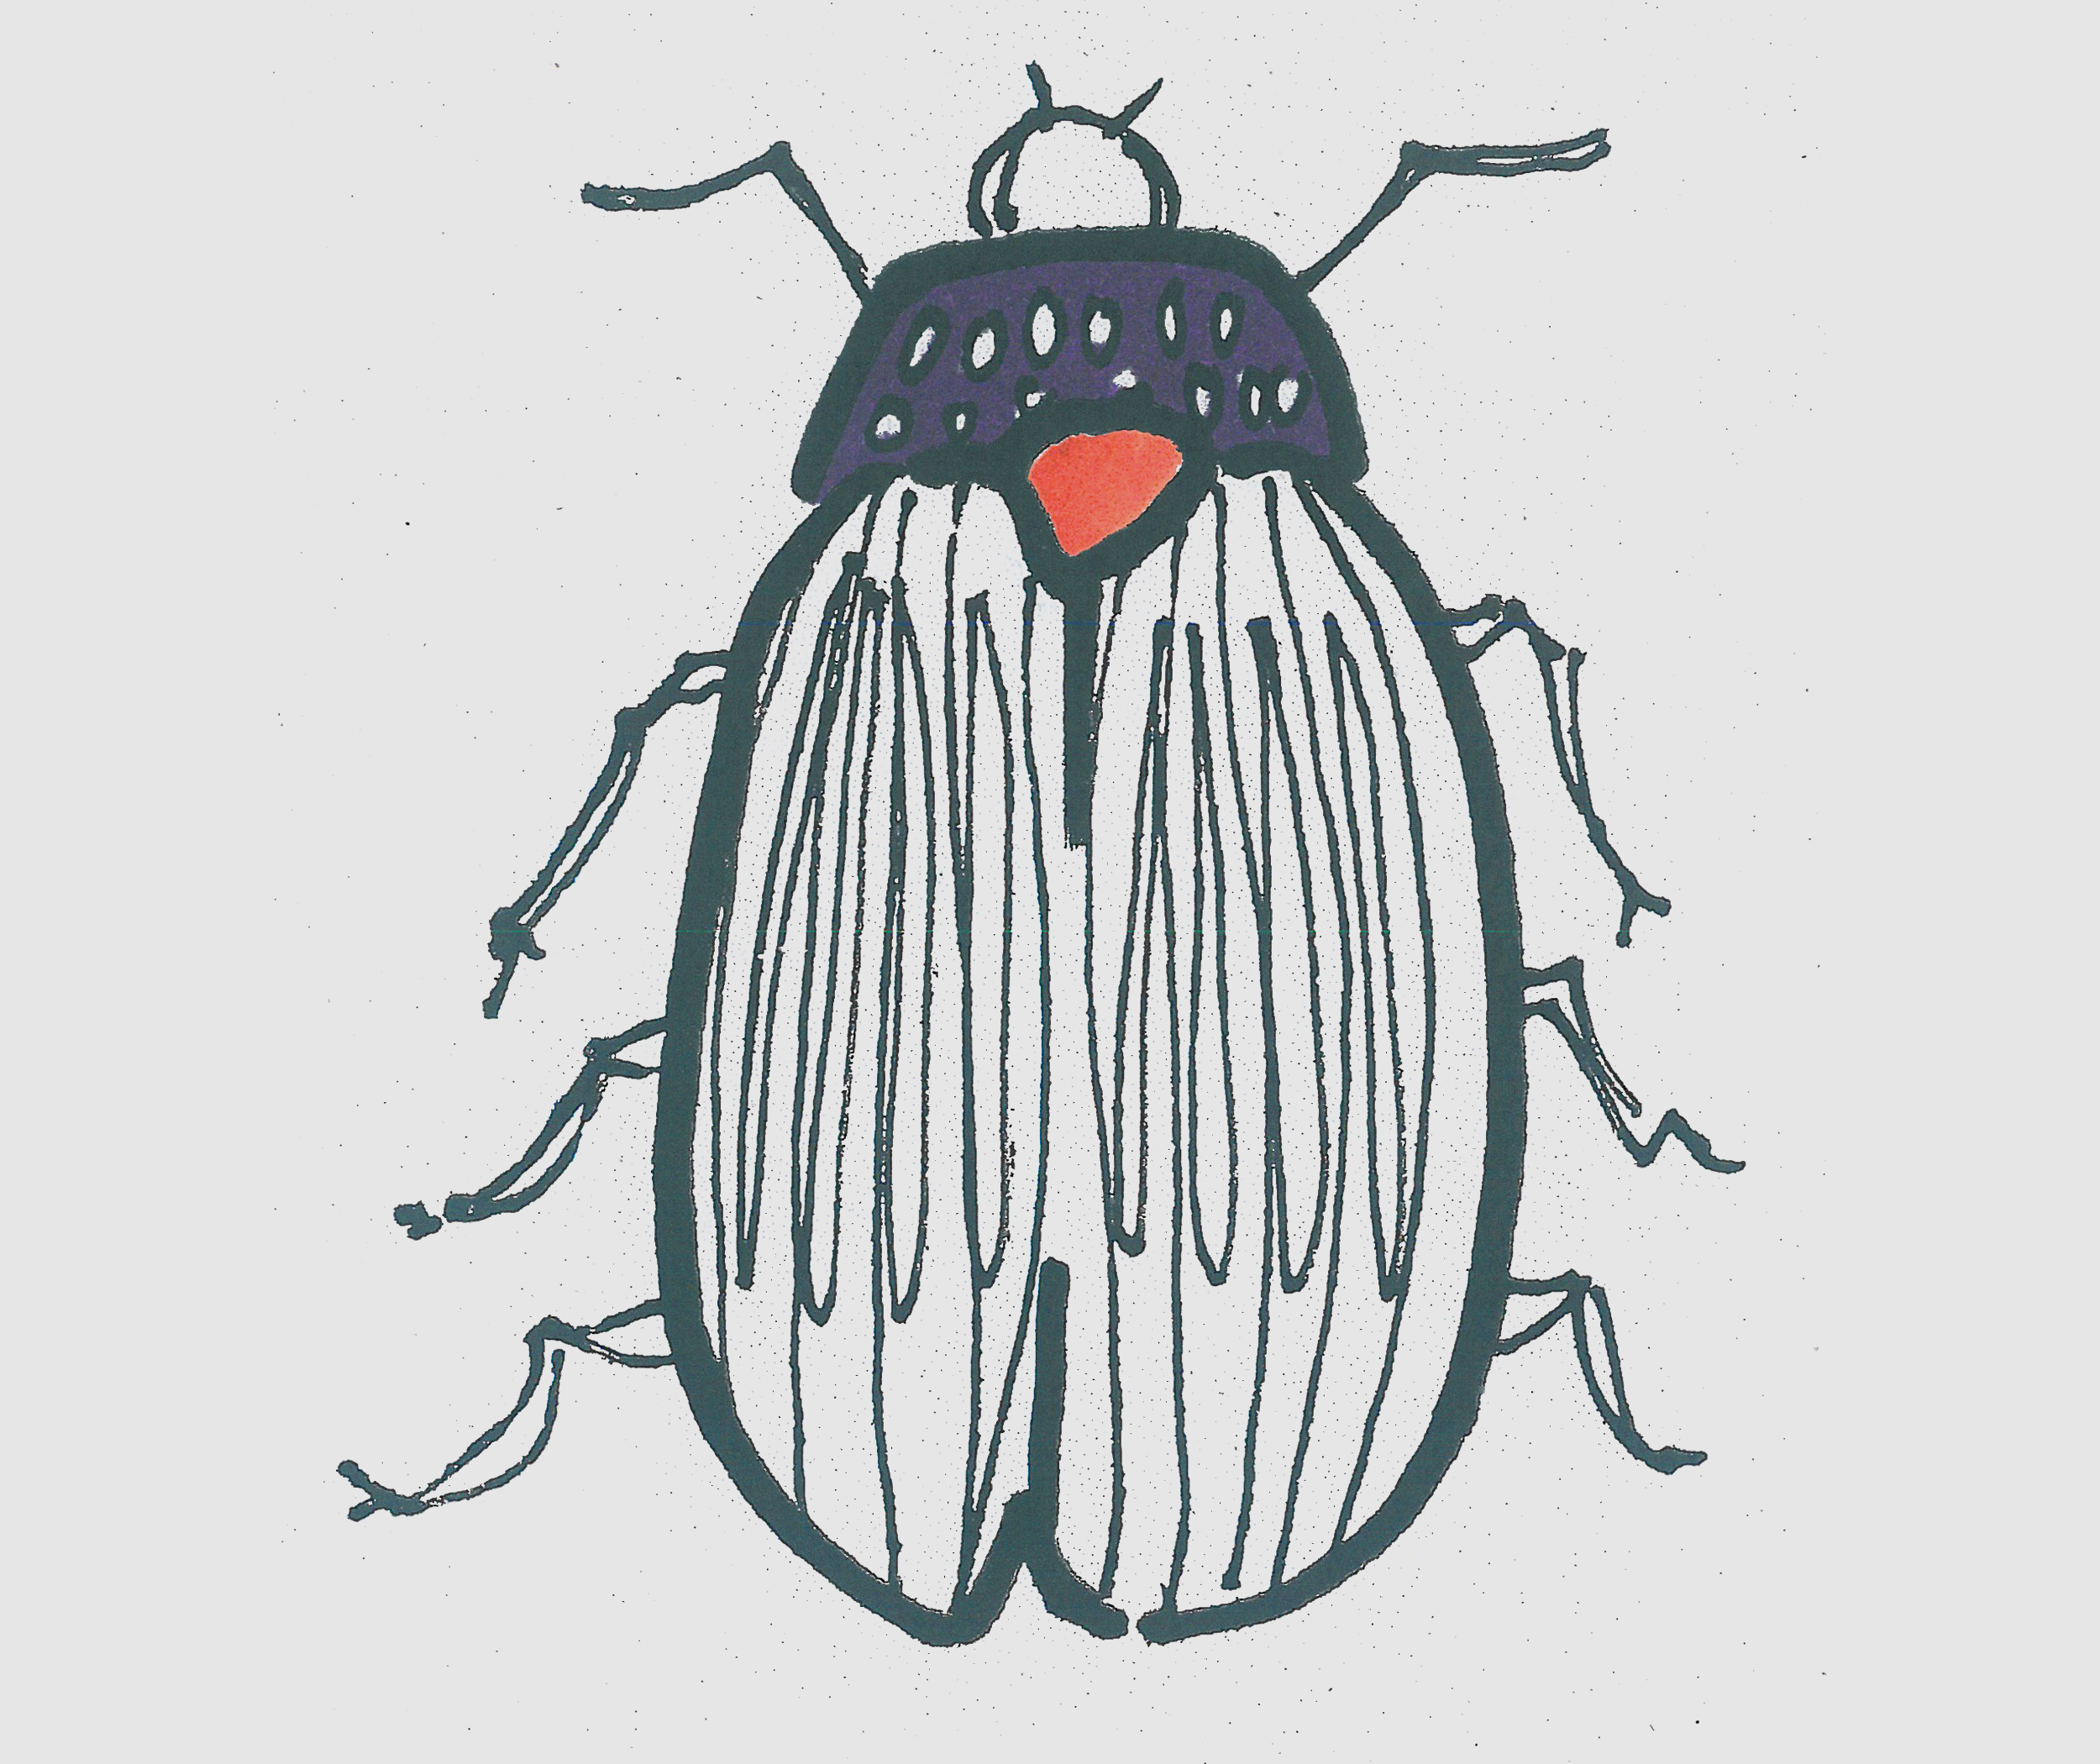 简笔画图片瓢虫怎么画 一步一步教可爱小瓢虫画法